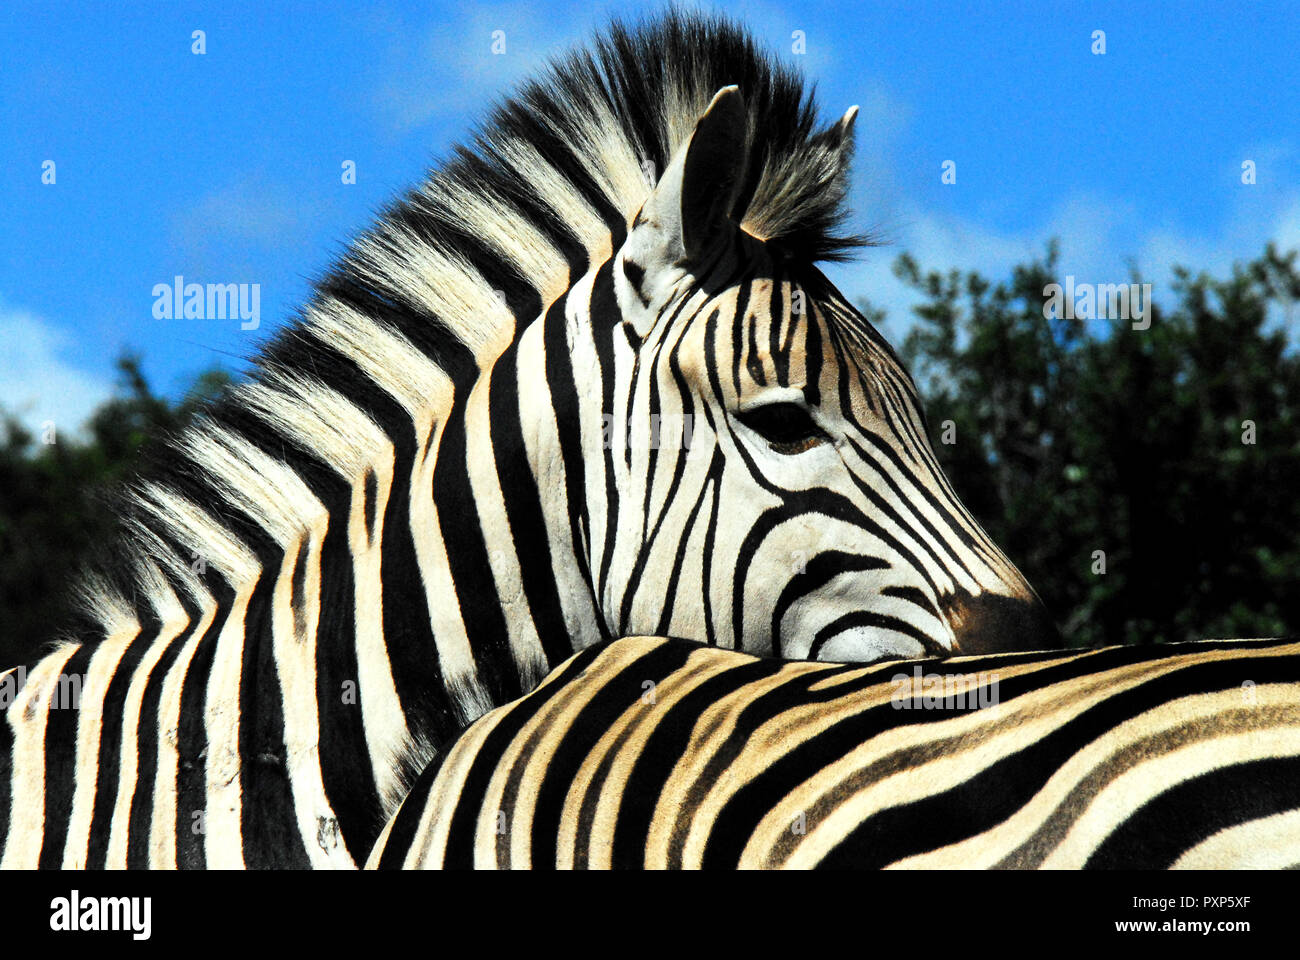 Diese fast abstrakten Nahaufnahme von zwei schönen Zebras zusammen erinnern uns daran, dass alle von der gleichen Streifen. Eine große Metapher für eine gemeinsame Menschheit Stockfoto